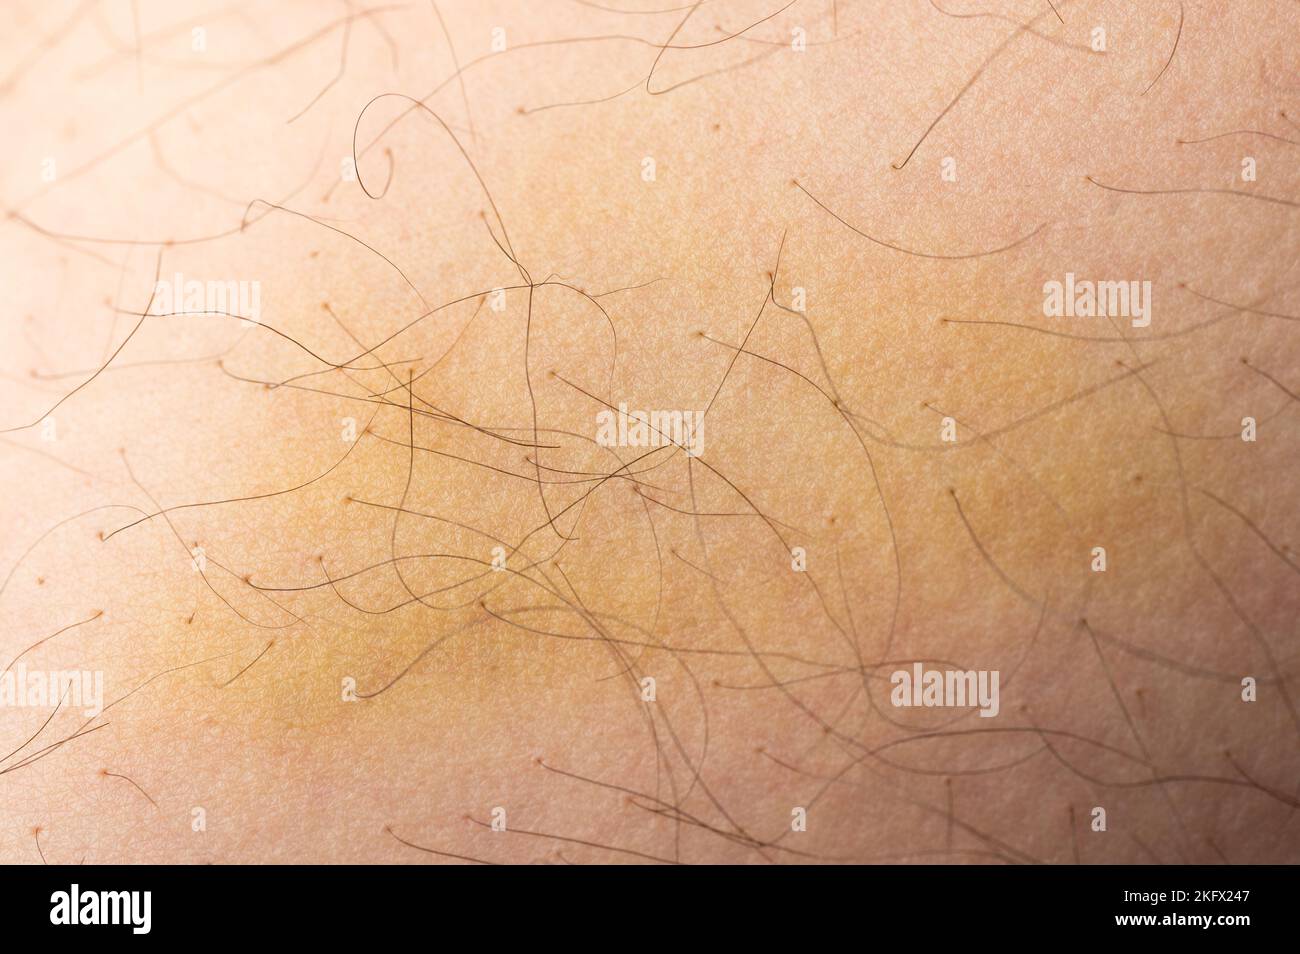 Lésion de la peau humaine avec une vue macro-rapprochée ecchymose Banque D'Images